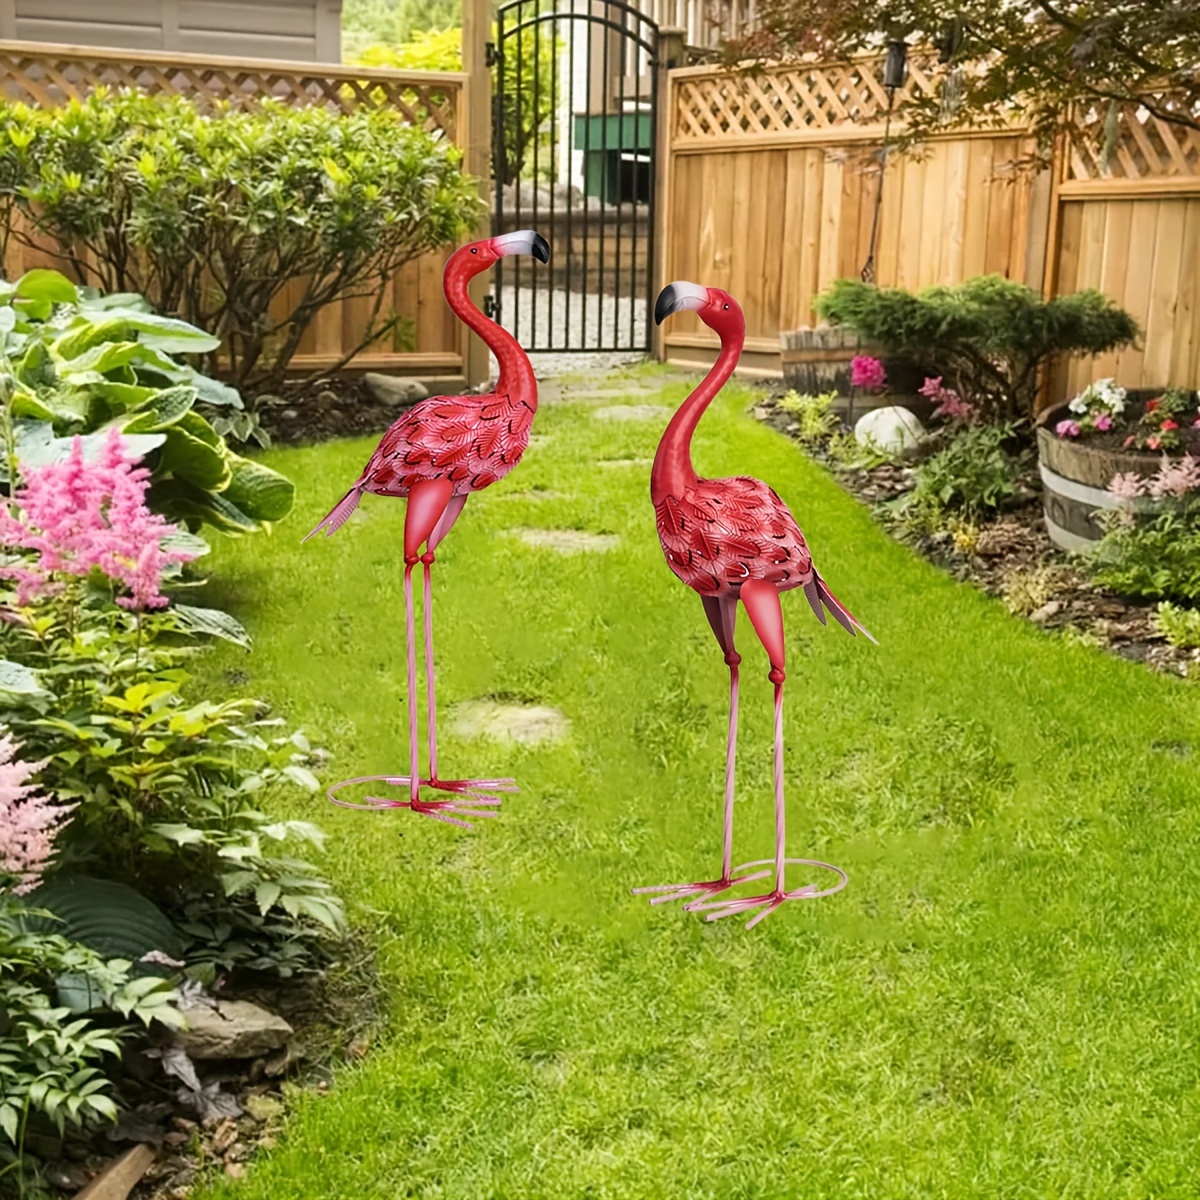 

1pc, Large Metal Flamingo Garden Statues And Sculptures, Flamingo Bird Garden Art Outdoor Statue For Home Decor, Garden Decor, Patio Decor, Lawn Decor, Backyard Decor